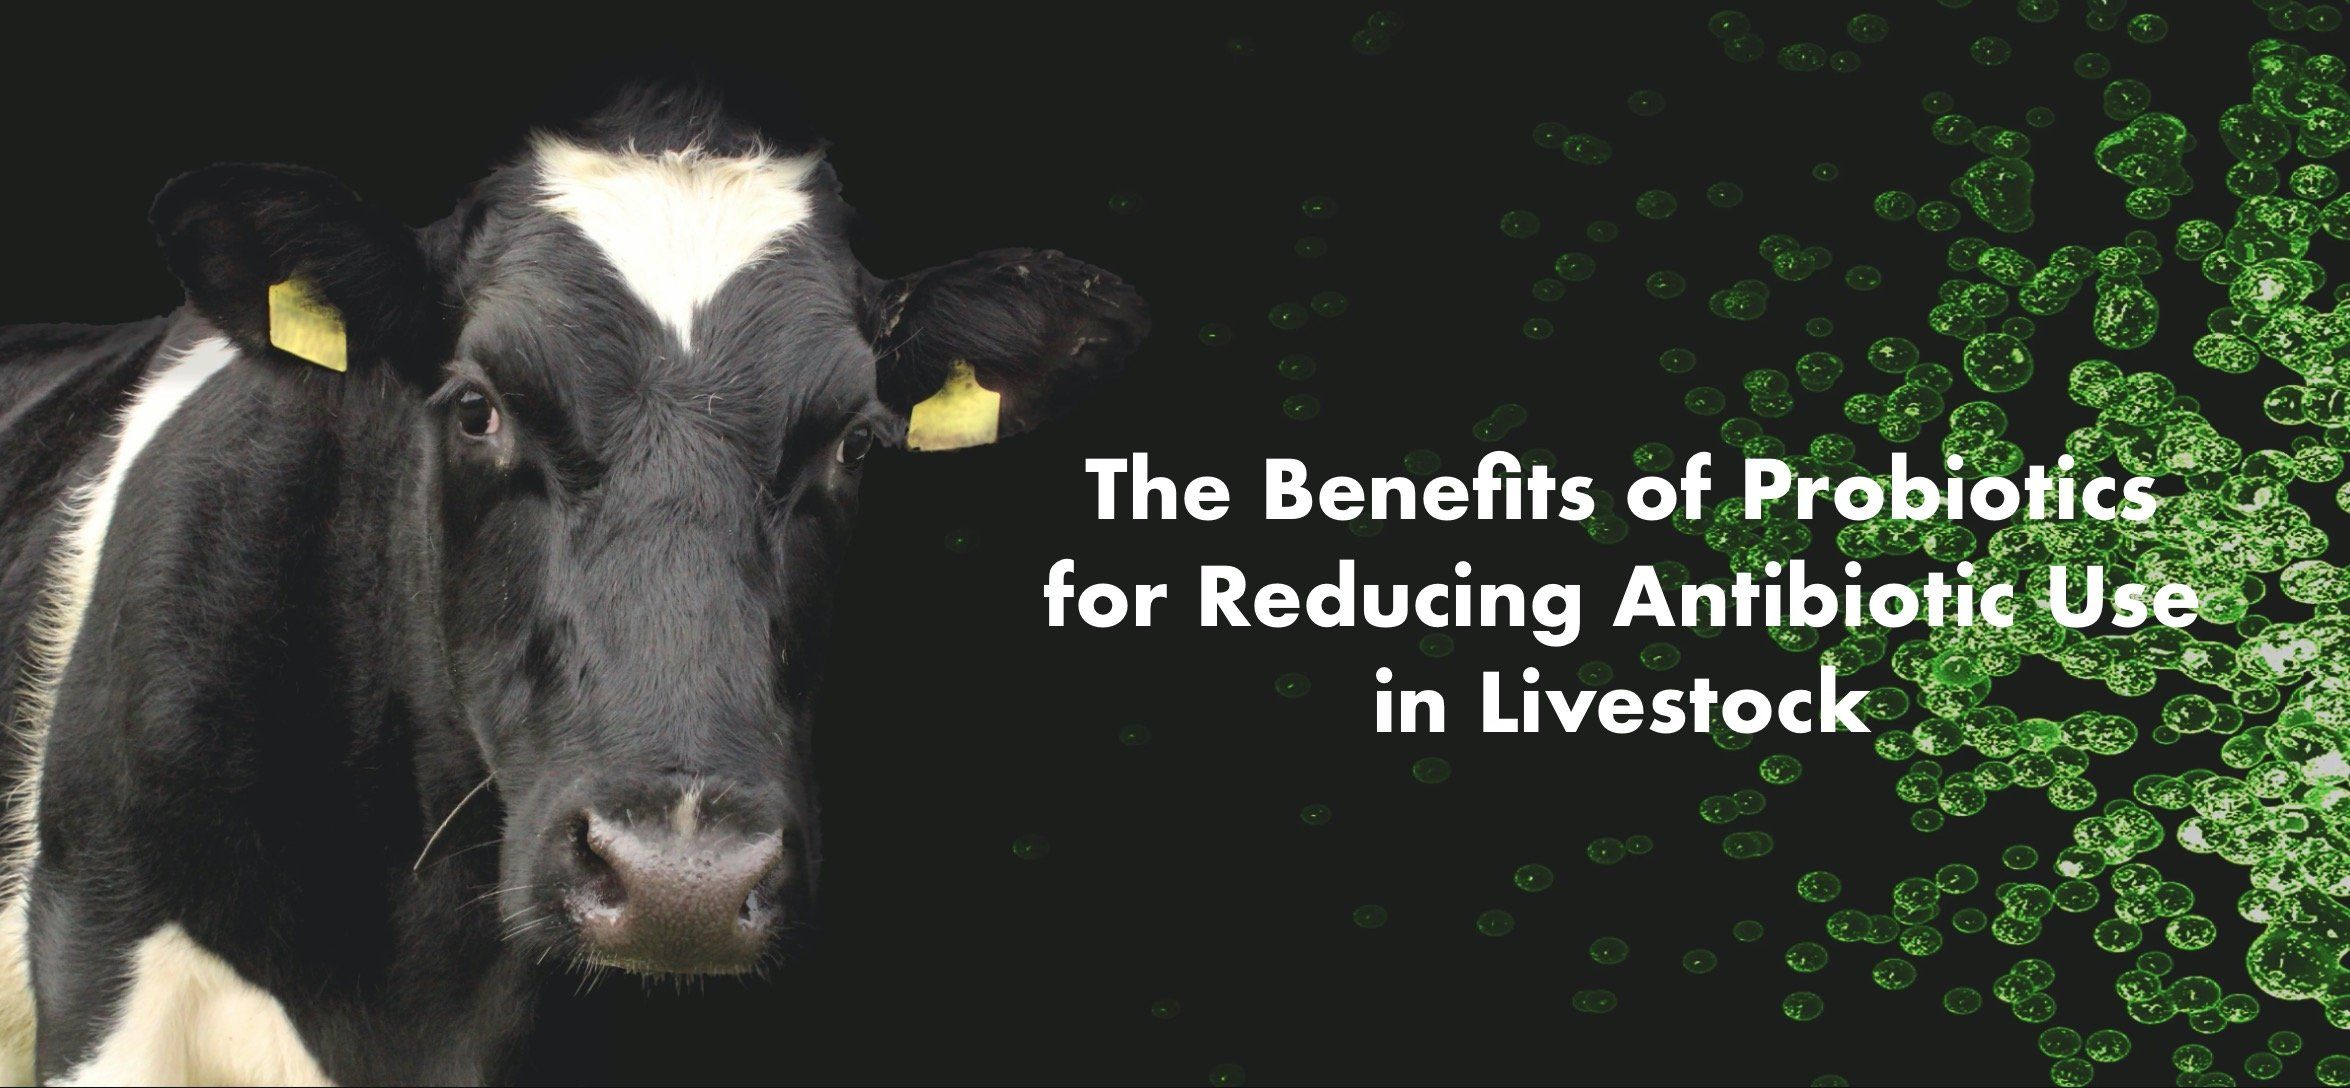 Benefits of Probiotics in Livestock